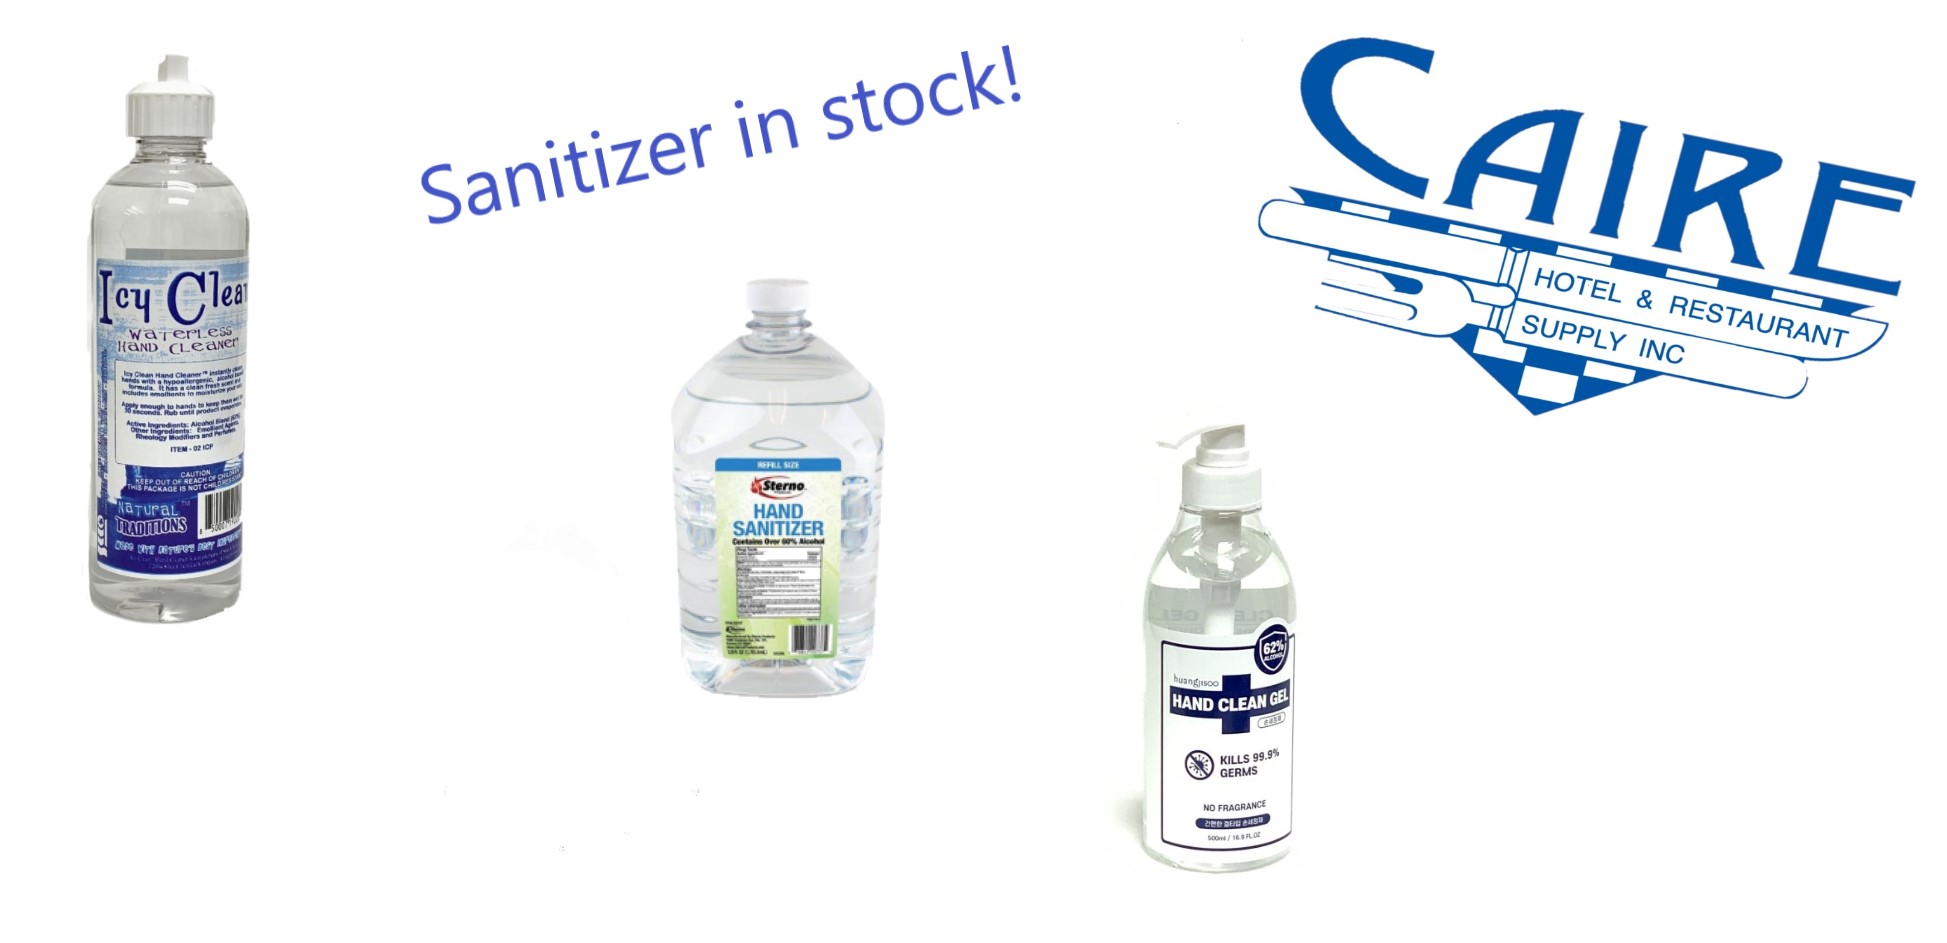 Sanitizer in Stock